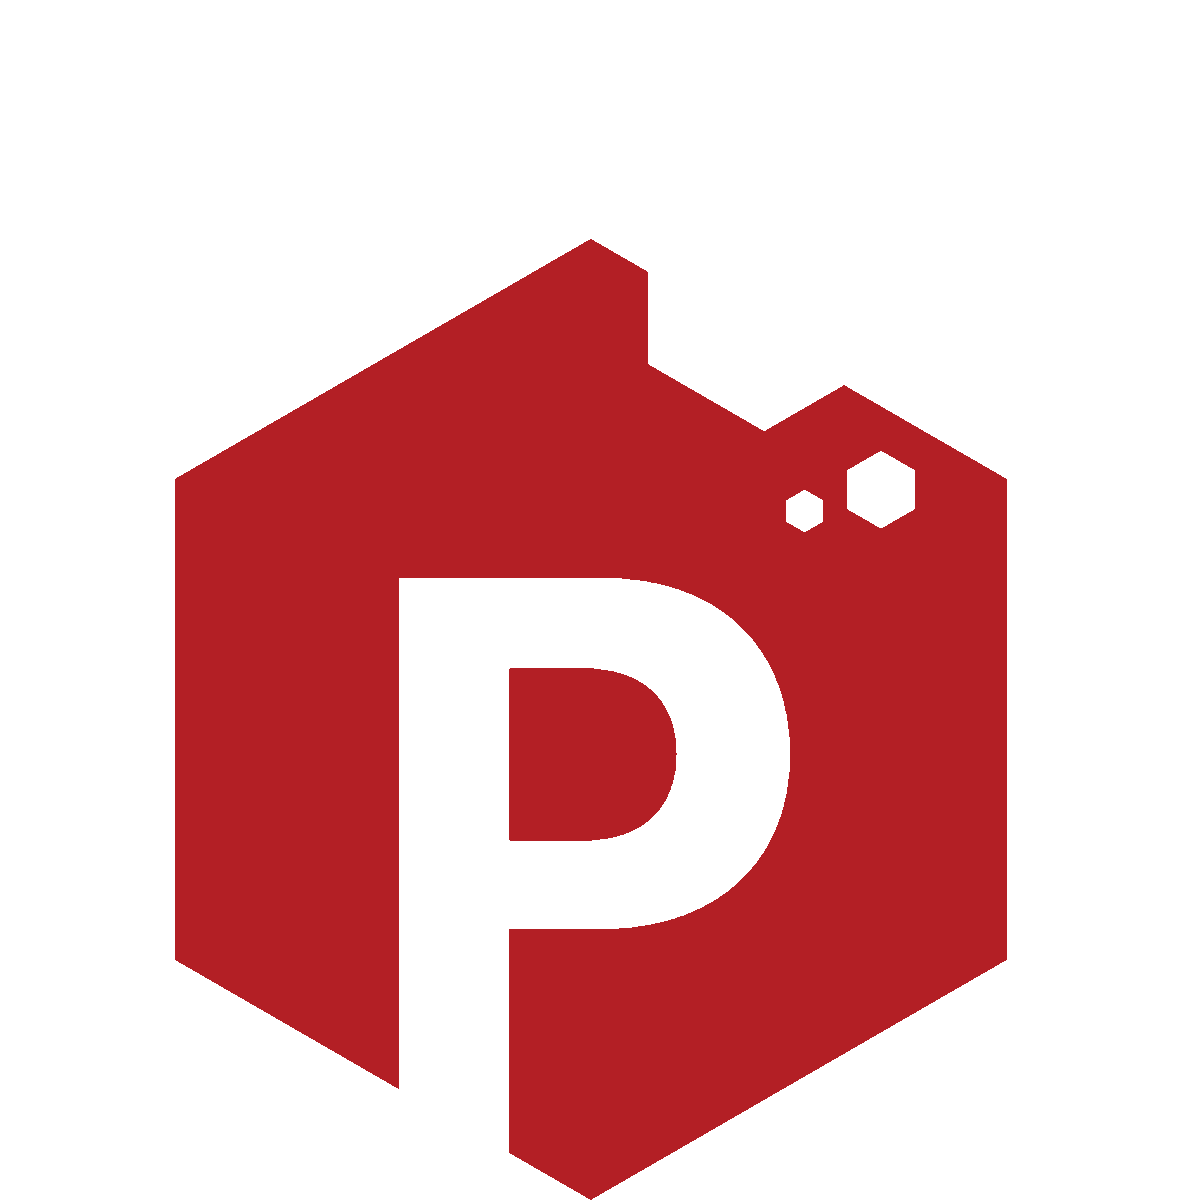 Icona del nostro software per la gestione dei pazienti con la lettera 'P'.